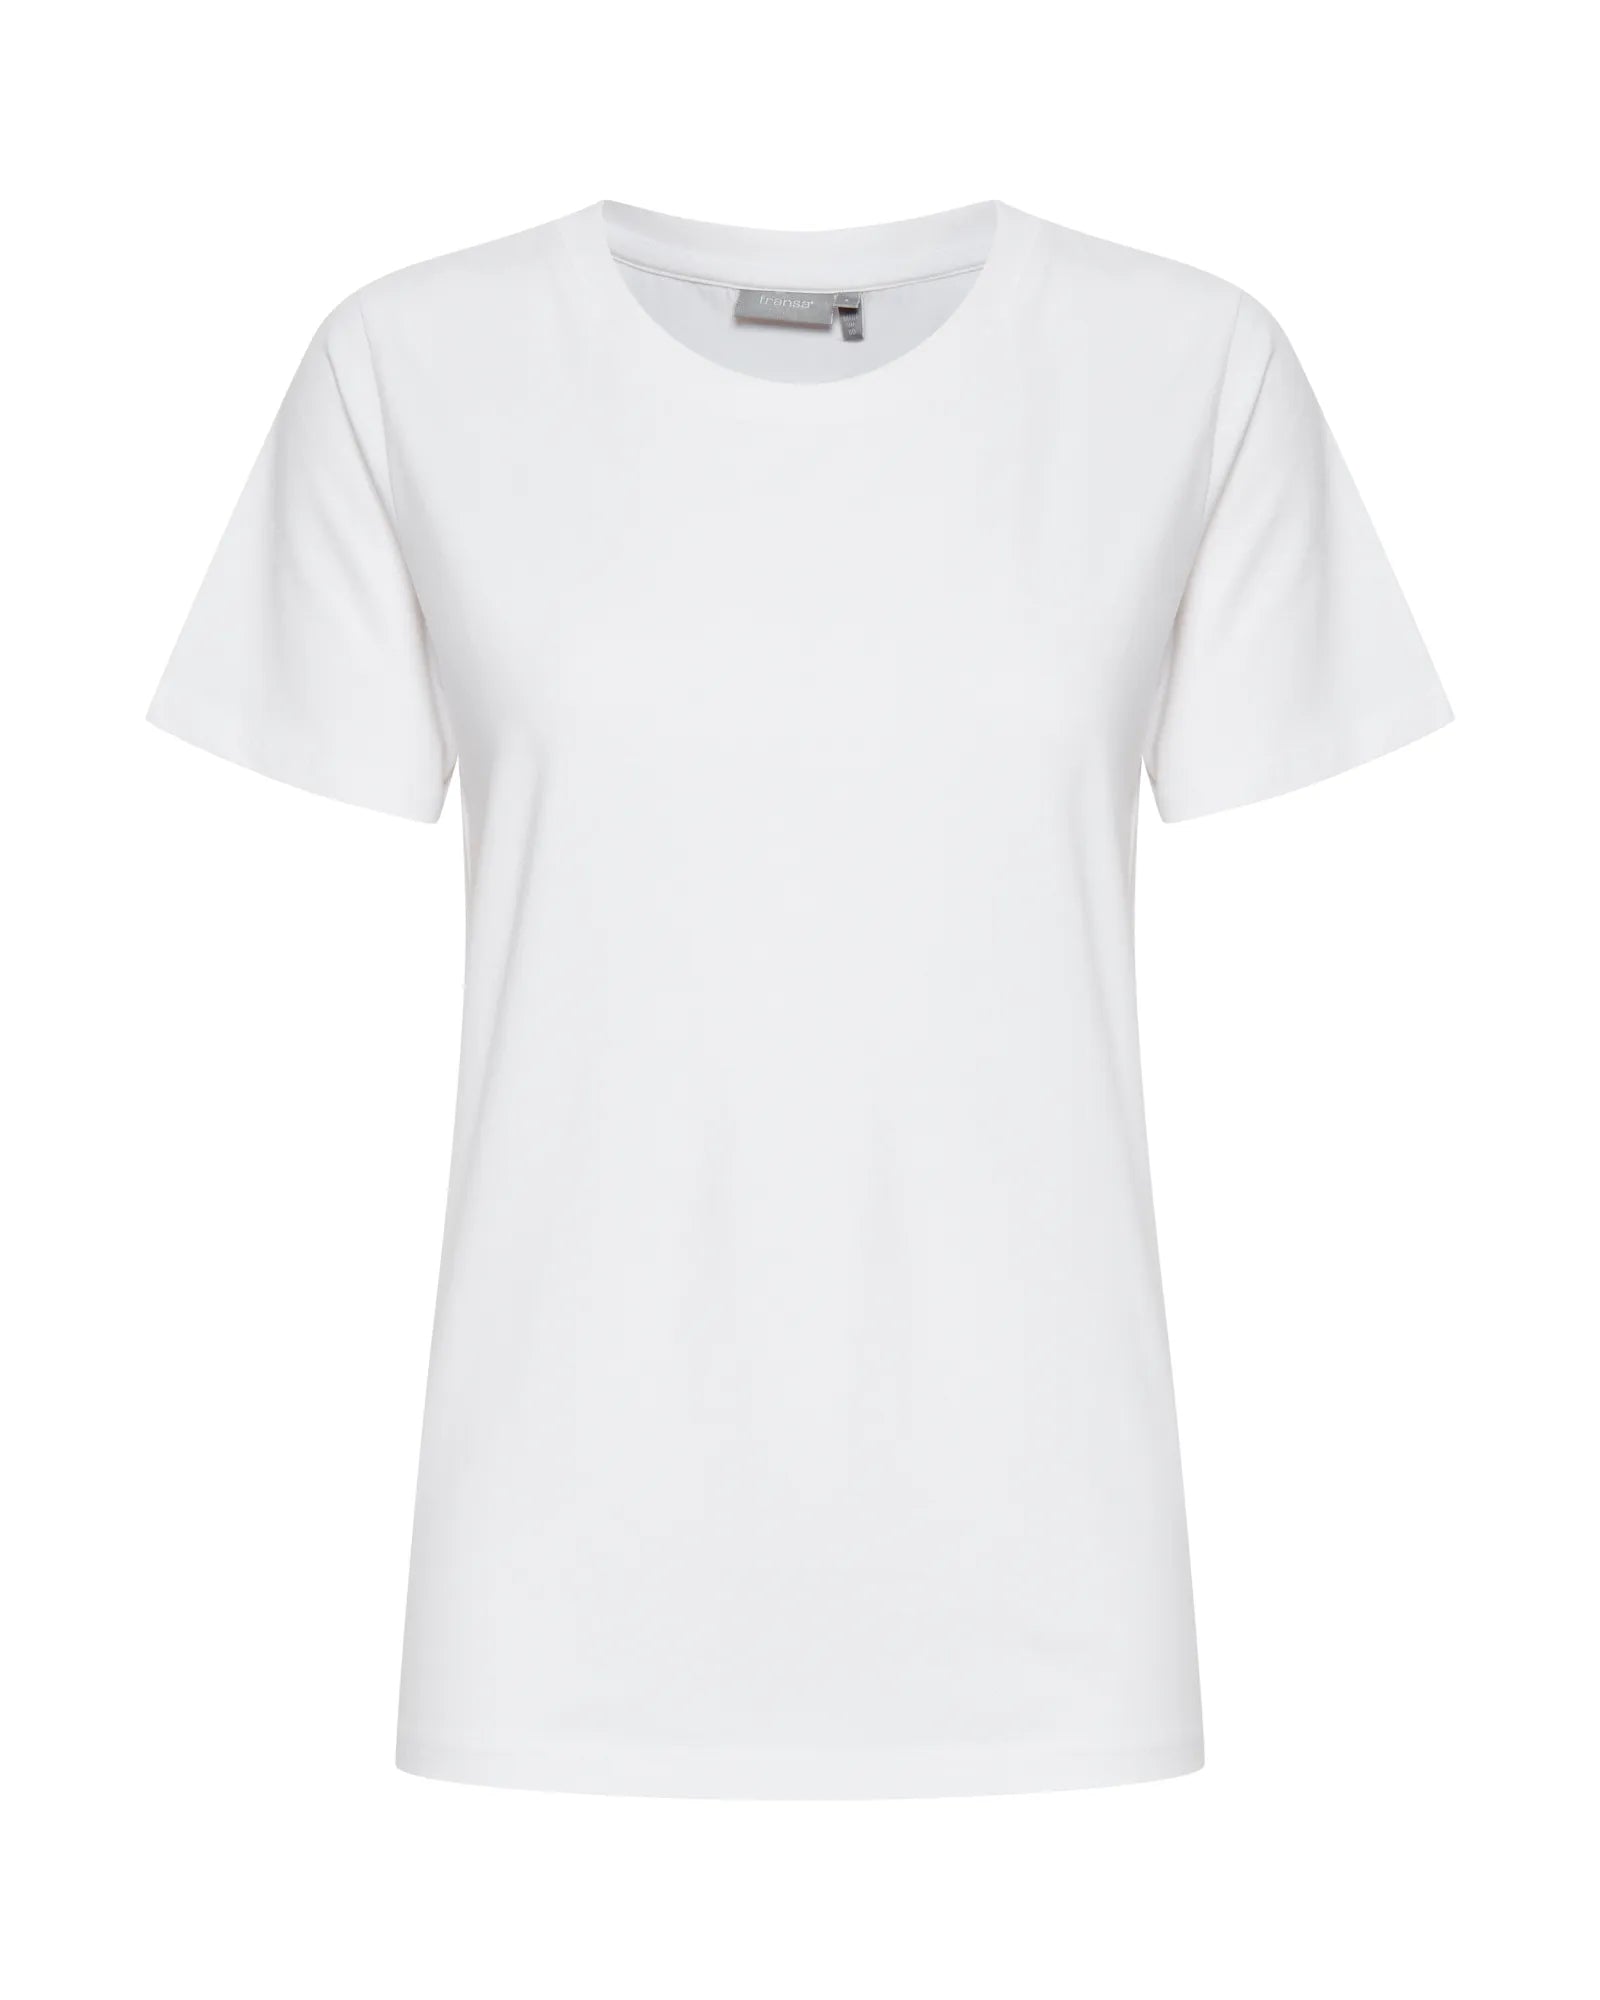 Zashoulder T-Shirt - White